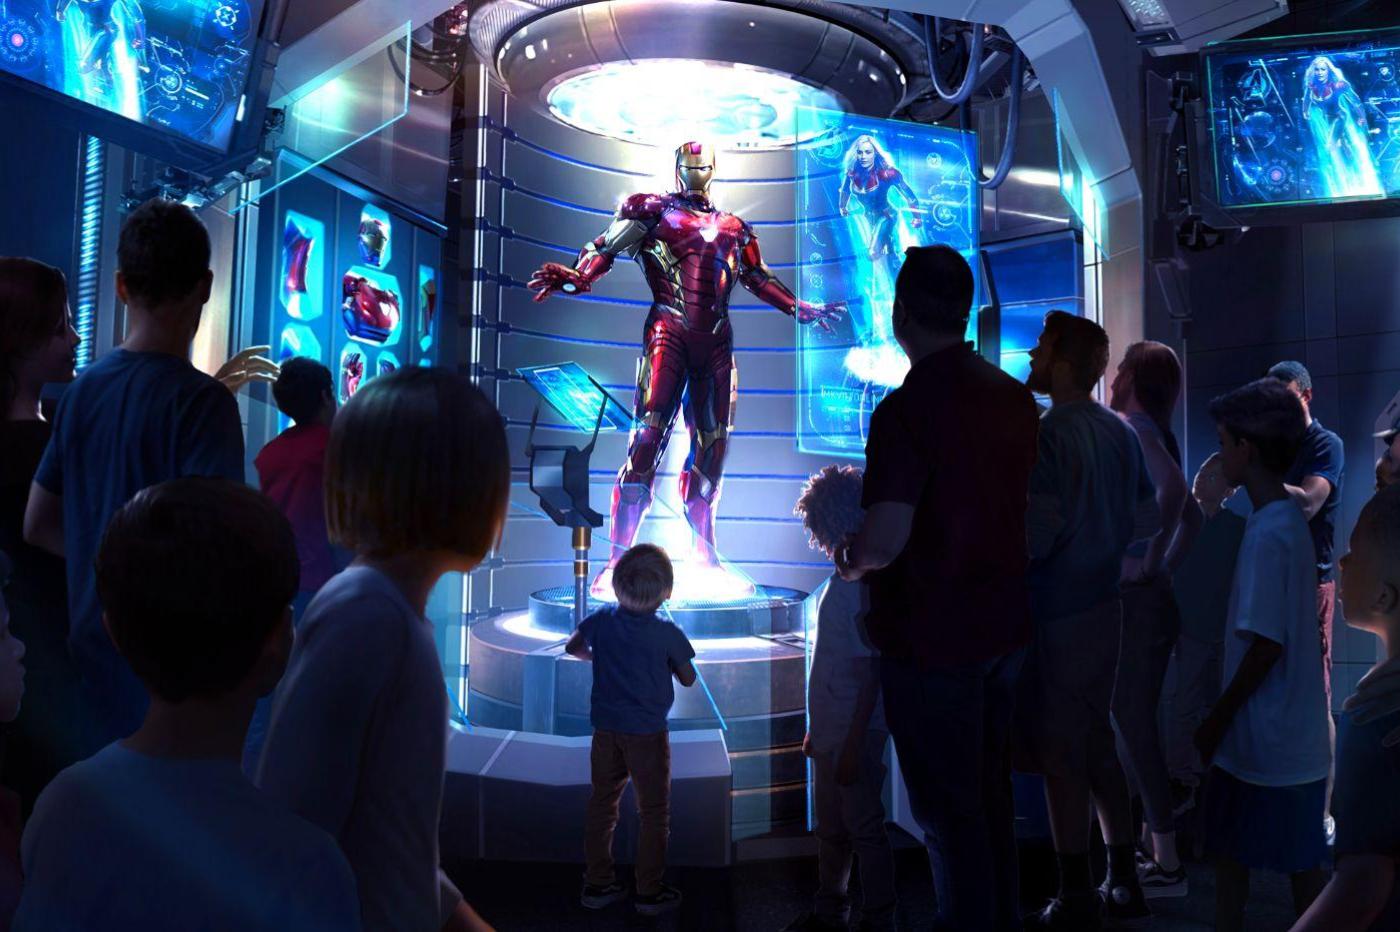 Image promotionnelle de l'attraction Avengers Assemble Flight Force montrant Iron Man pendant le préshow de l'attraction